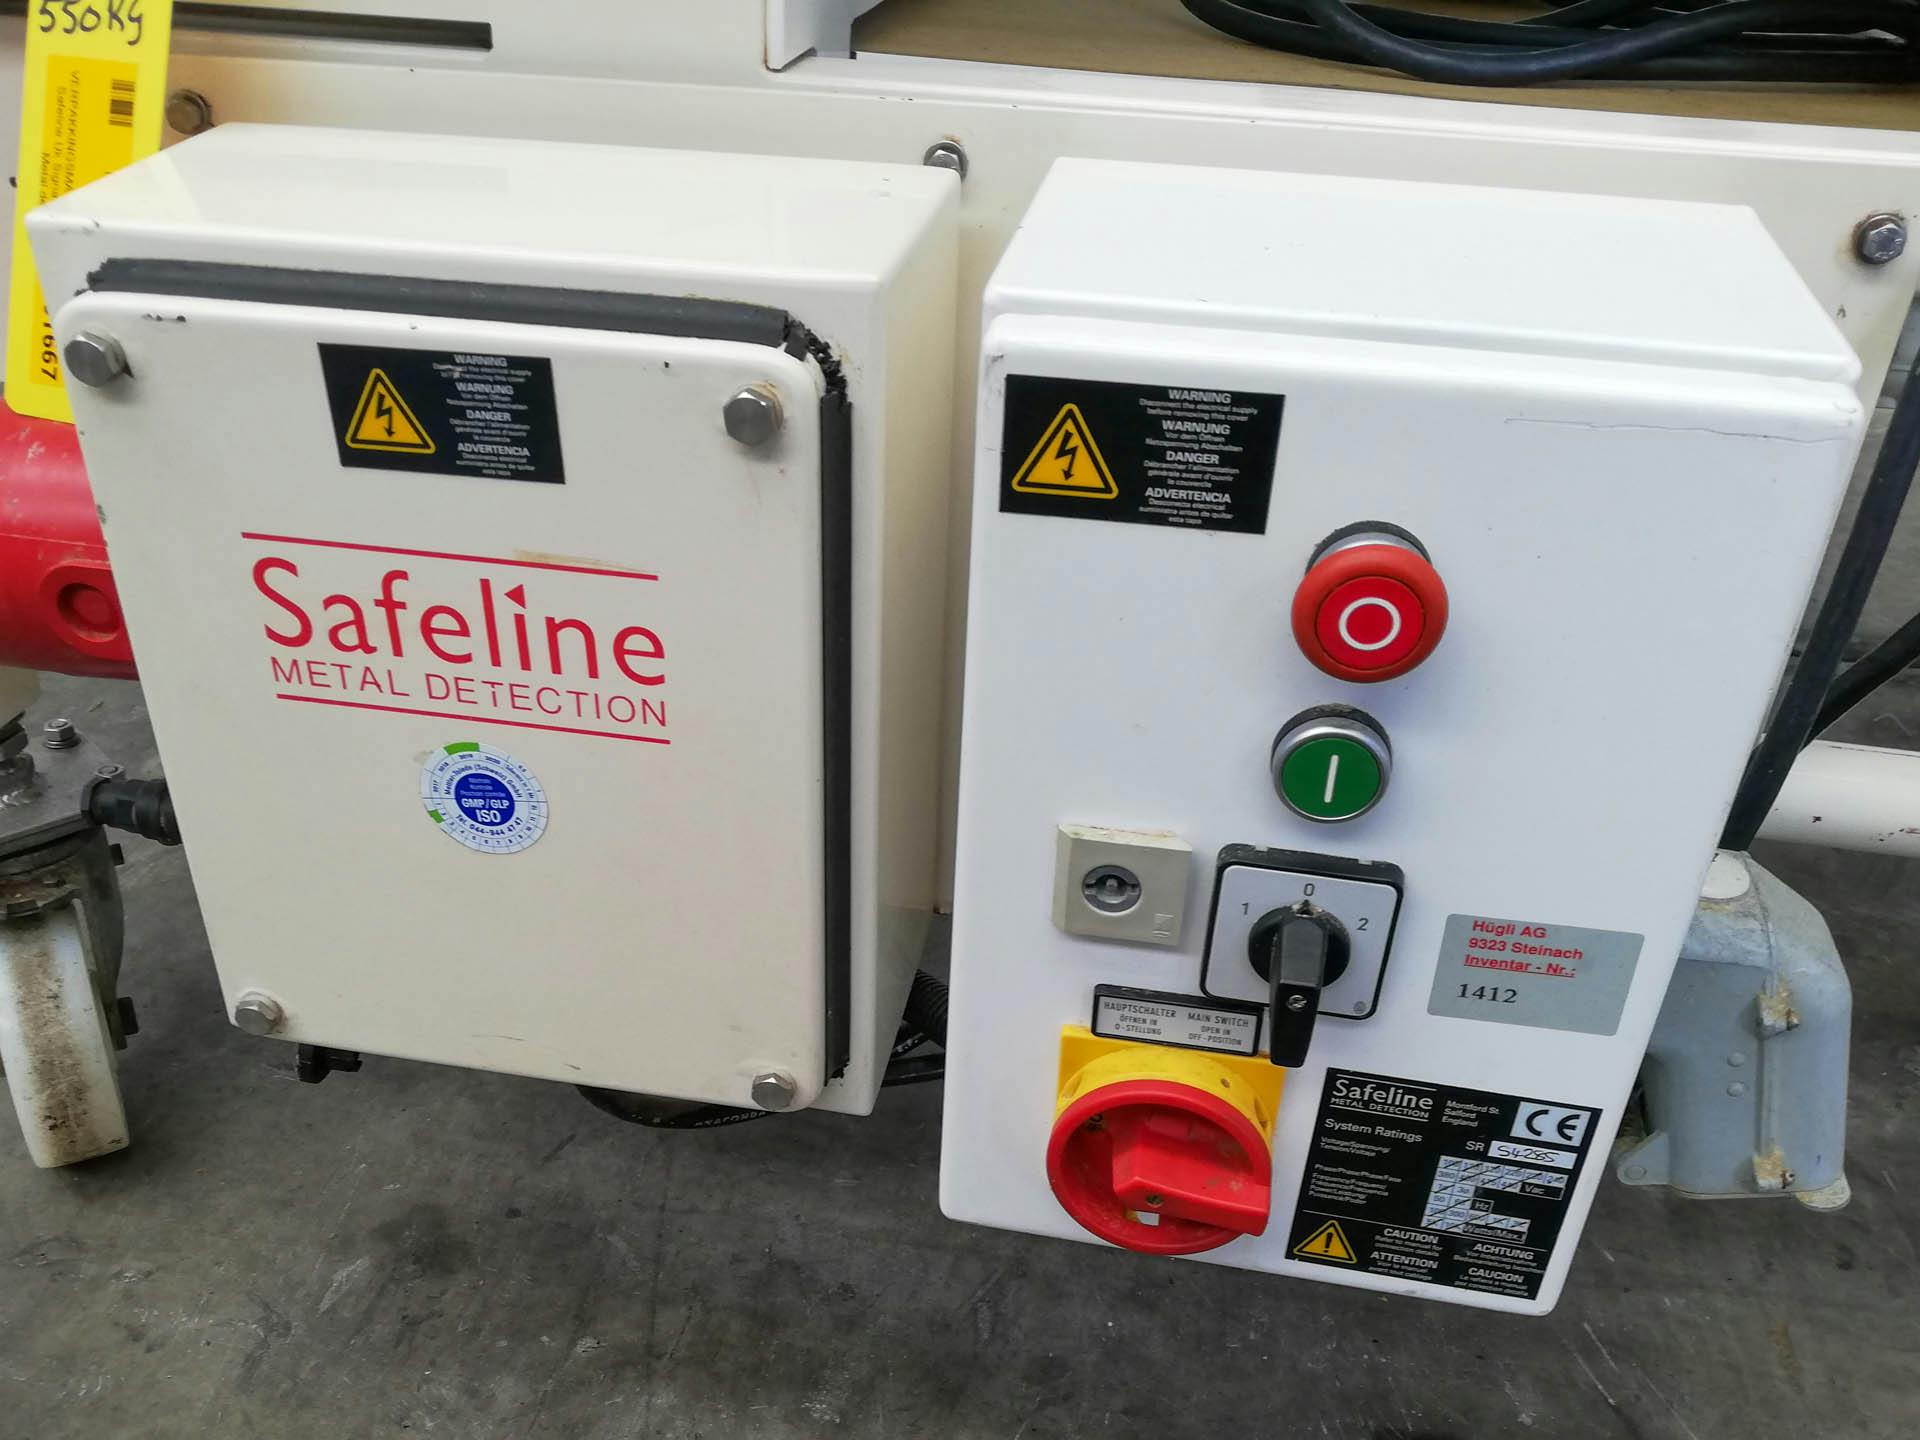 Safeline Uk Signature 2 - Metaaldetektor - image 4